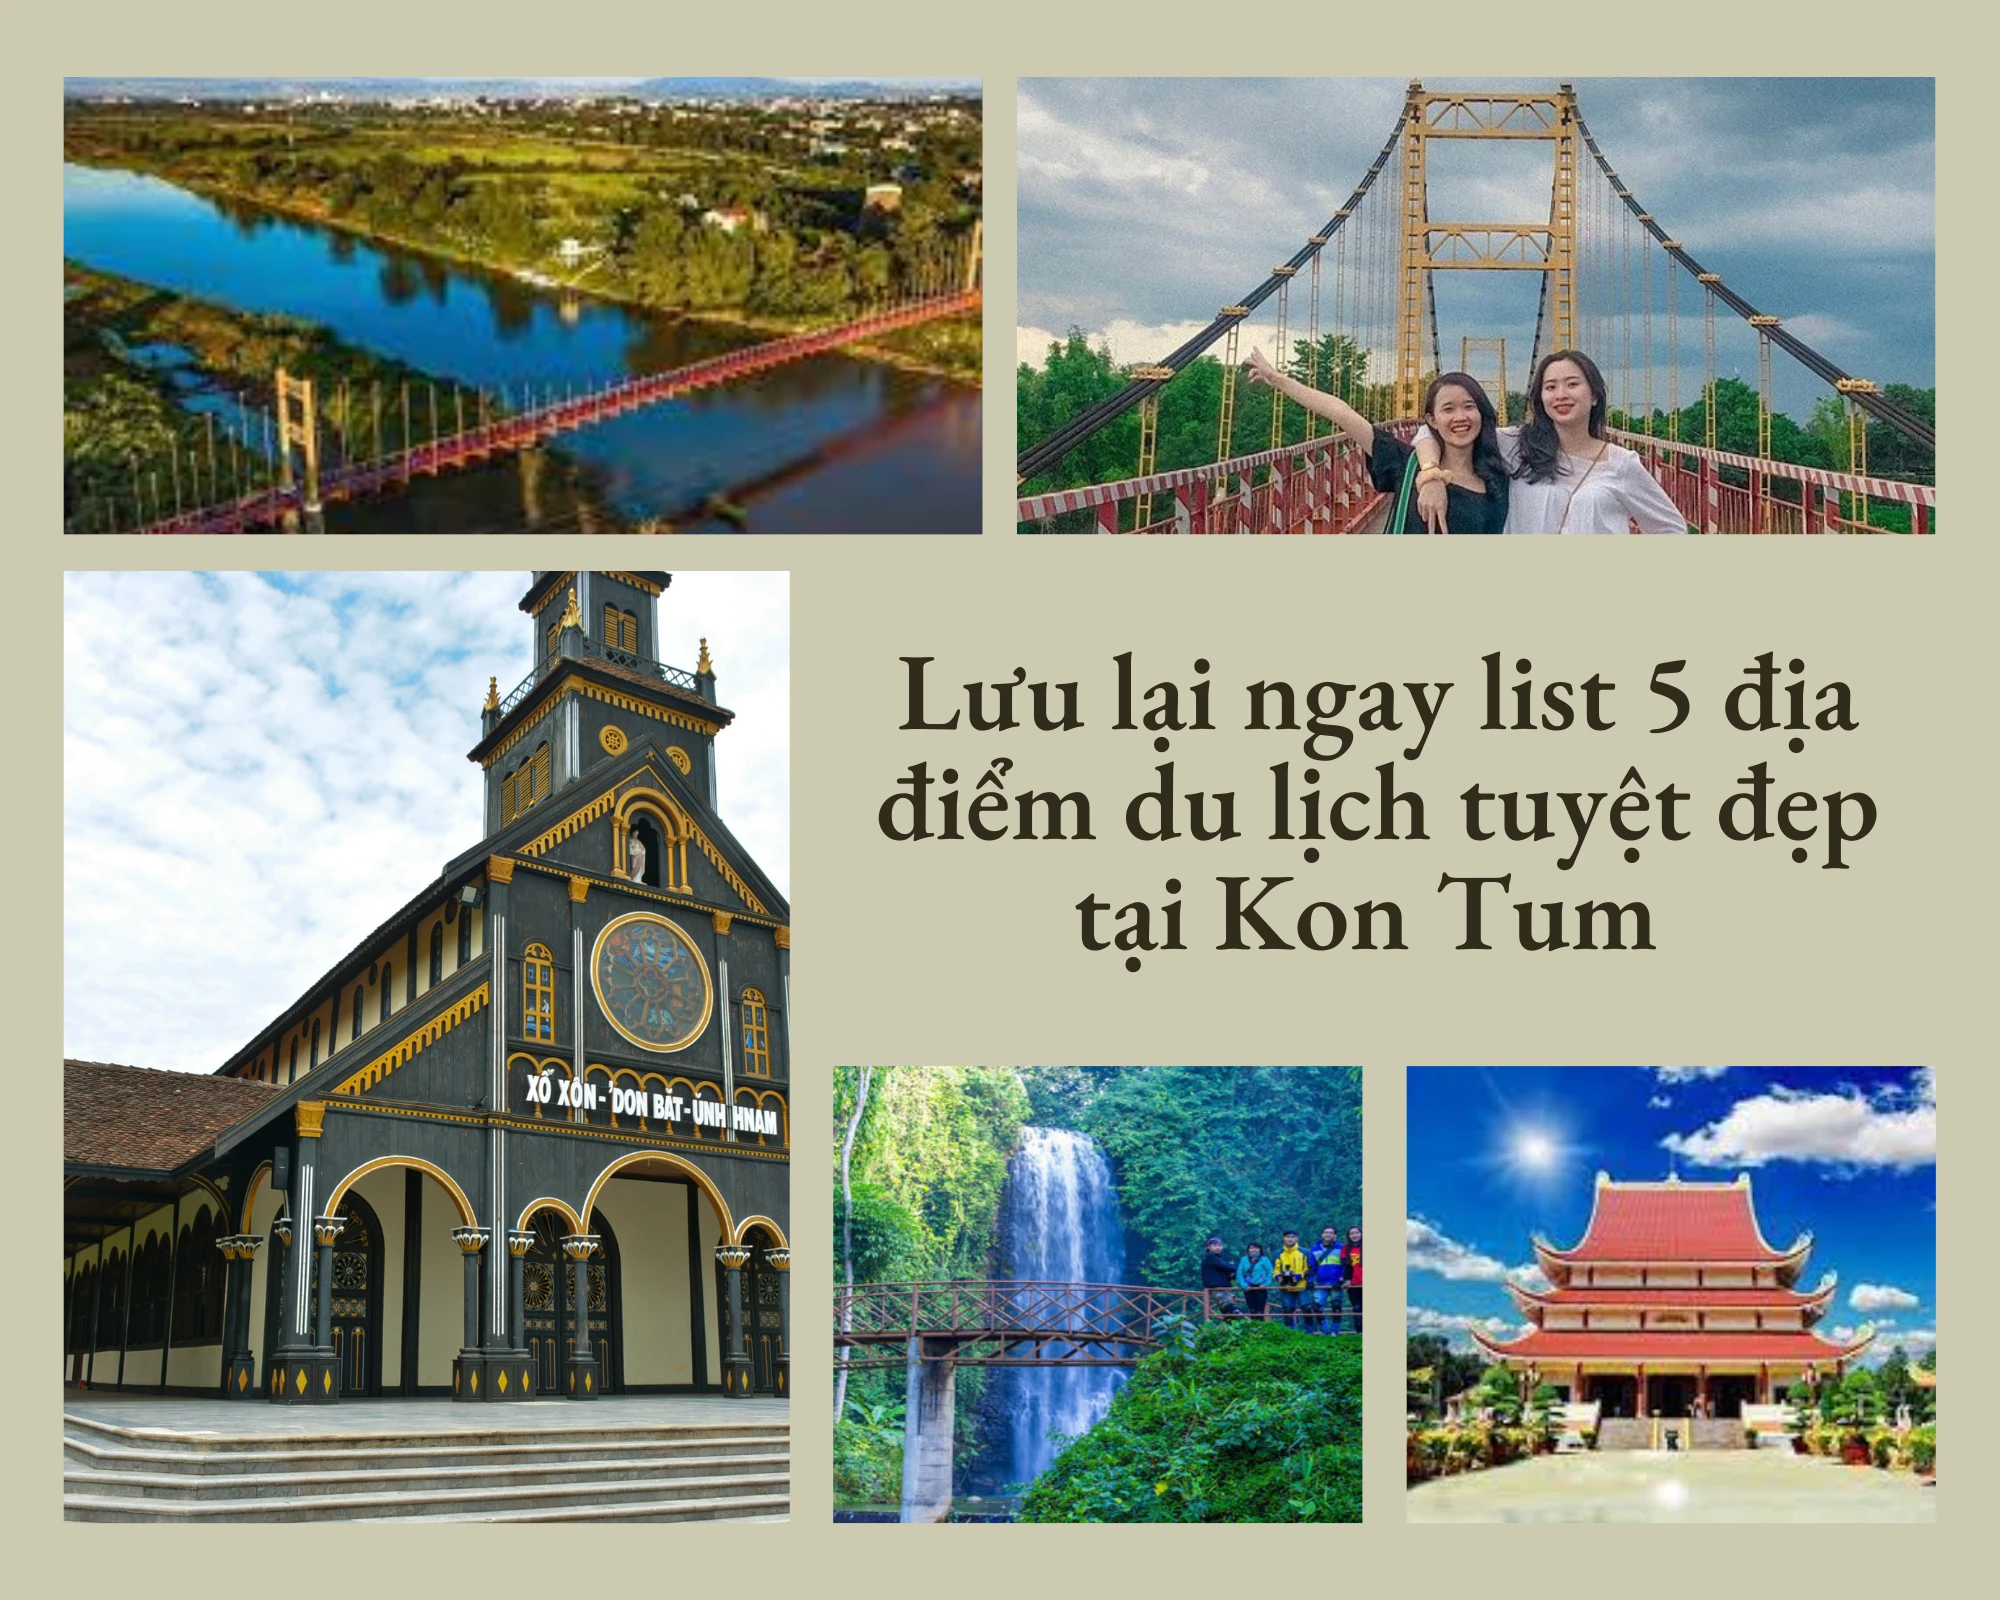 Lưu lại ngay list 5 địa điểm du lịch tuyệt đẹp tại Kon Tum